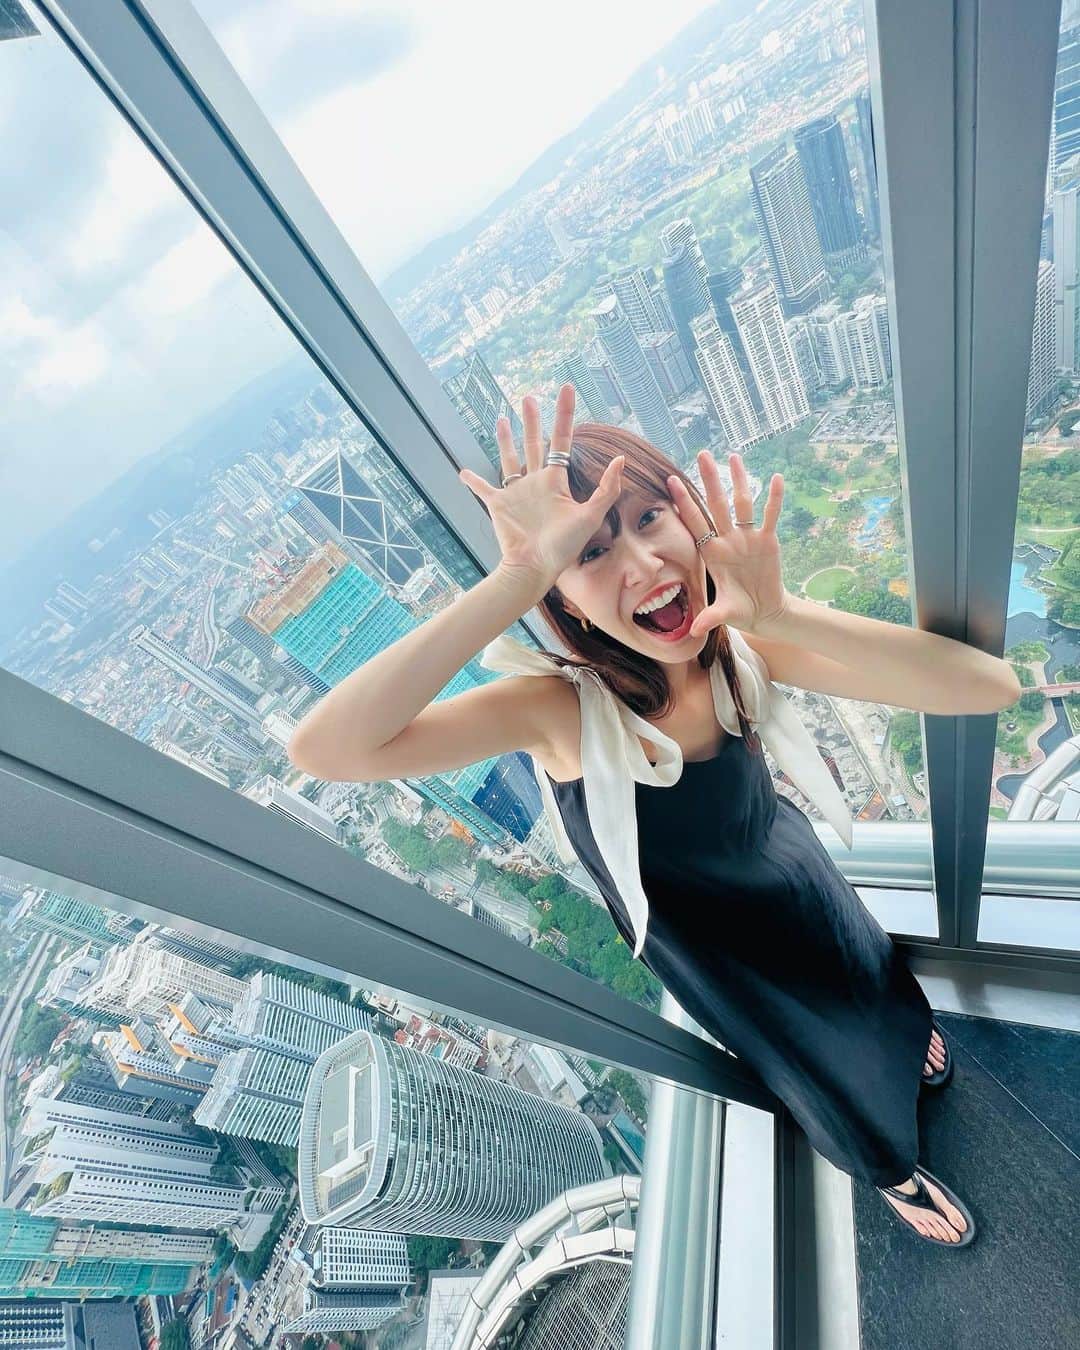 菊井彰子のインスタグラム：「マレーシア旅行🇲🇾② ー観光編－  ●ペトロナスツインタワー（1〜４枚目） 451.9mある超高層ビル。 世界で２番目に高いタワー。 ちなみに一番高いタワーはドバイにあるみたいだよ✨ スタッフさんに記念にお写真をお願いしたら、こっちもあっちも撮った方がいいよ&ポージングまで指定して撮ってくれた（羞恥心） さすがの優しい親日国🤣🤣🤣🙏  ●セントラルマーケット （5〜７枚目） いわゆる観光客のためのお土産やさんが何店舗も連なってる建物♪ 人気のナマコ石鹸をゲット💚  ●チャイナタウン （8〜９枚目） 横浜中華街みたいなのかなーと思って行ったら、色んなブランドのニ○モノというかレプリカというか🤣 のお店が沢山並んでいた。笑 おねだりされたローラ姫の時計を娘に購入。 お兄さんとっても優しく娘の腕サイズに調節してくれてたよ⌚️まぁ、次の日壊れちゃったんだけどねw  ●パビリオン（１０枚目） クアラルンプールの一番大通りの繁華街にある超どでかいショッピングモール。 ここに来るとなんでもあるし、なんとでもなーる！ 数年前にジャパンフェスの仕事で来たことがあってとても懐かしい場所🫶  やっぱり日本以外の国へ旅行に行くって楽しいなー🥳🥳  娘にも沢山経験してもらいたい♪  ・ ・ ・ ・ ・ ・ ・ #子連れ海外  #子連れ海外旅行  #ペトロナスツインタワー  #セントラルマーケットクアラルンプール  #klcctower  #petronastwintowers  #malaysia  #kualalumpur  #マレーシア観光  #マレーシア旅行  #マレーシアグルメ  #マレーシアごはん #3歳9ヶ月女の子 #クアラルンプール旅行  #3yearsold  #3y9m  #3歳9ヶ月」